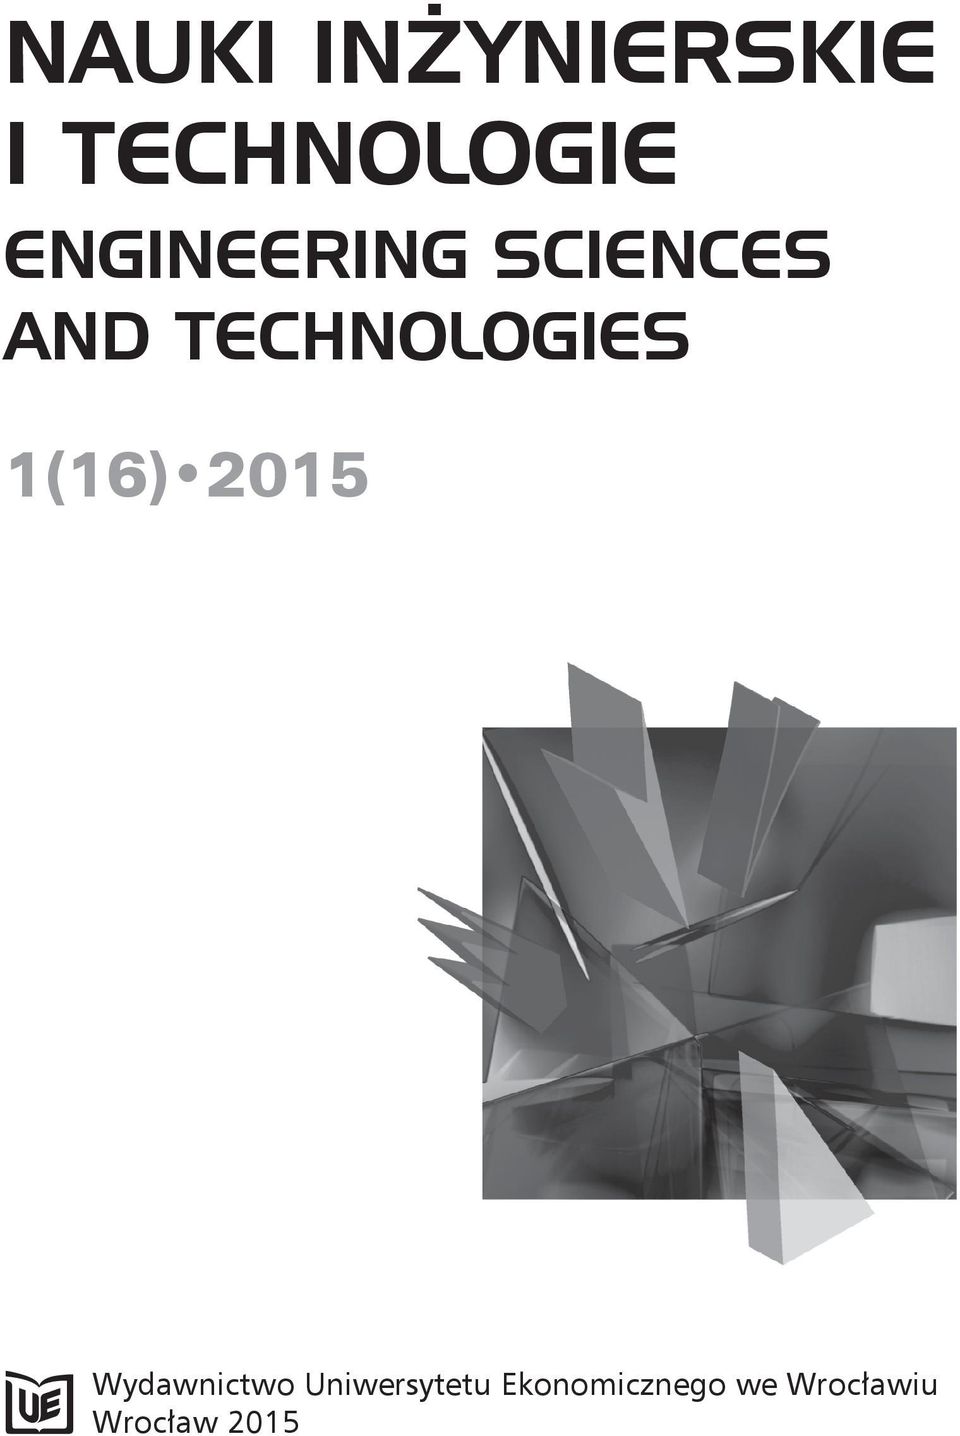 TECHNOLOGIES 1(16) 2015 Wydawnictwo